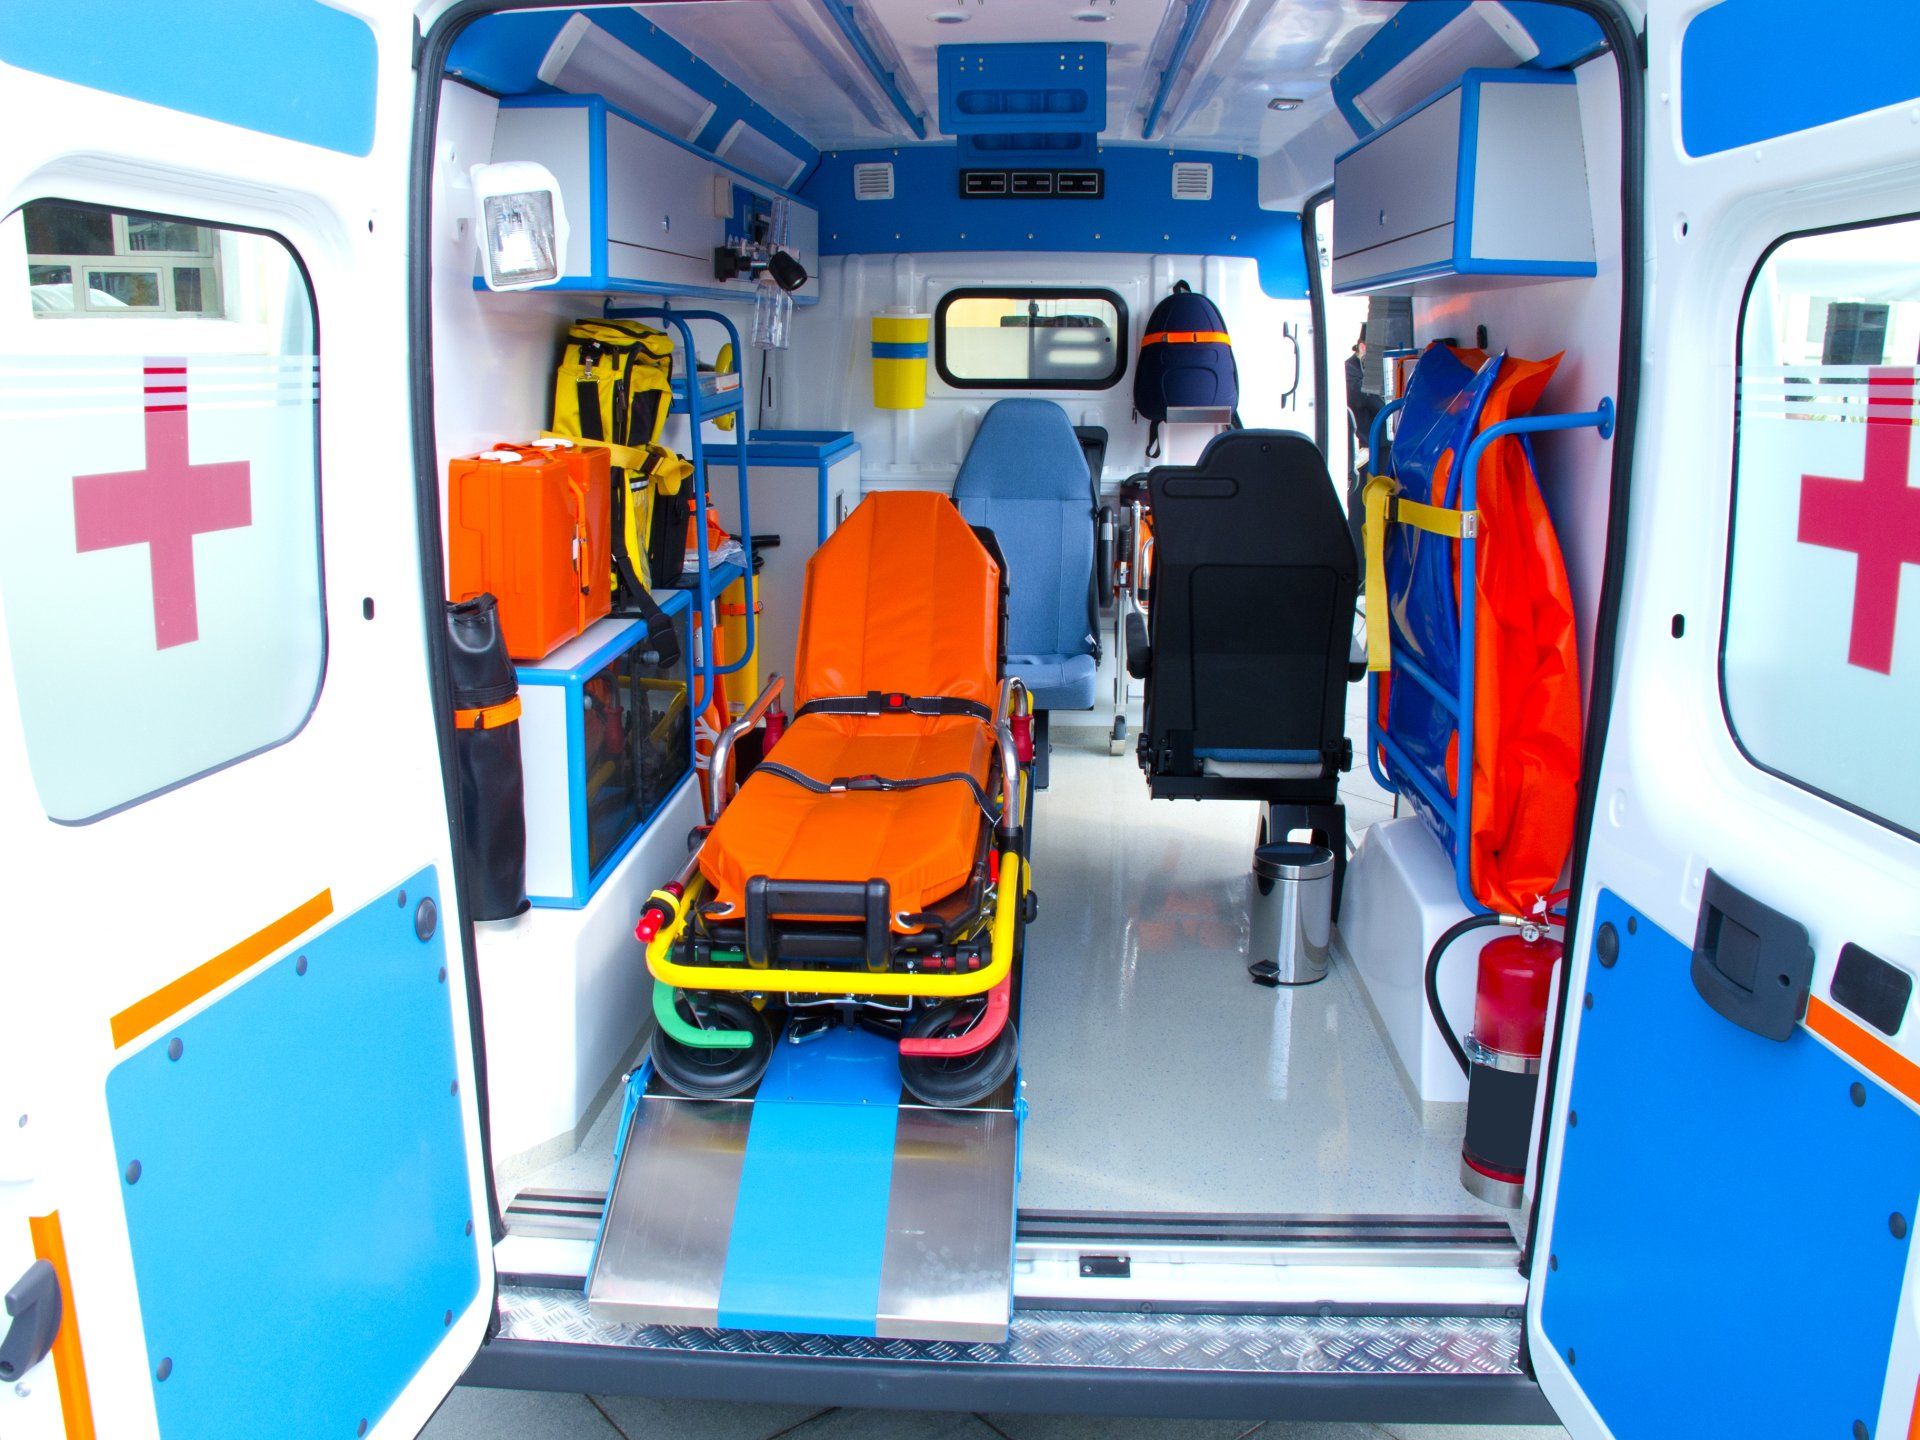 Aperçu de l'intérieur d'une ambulance